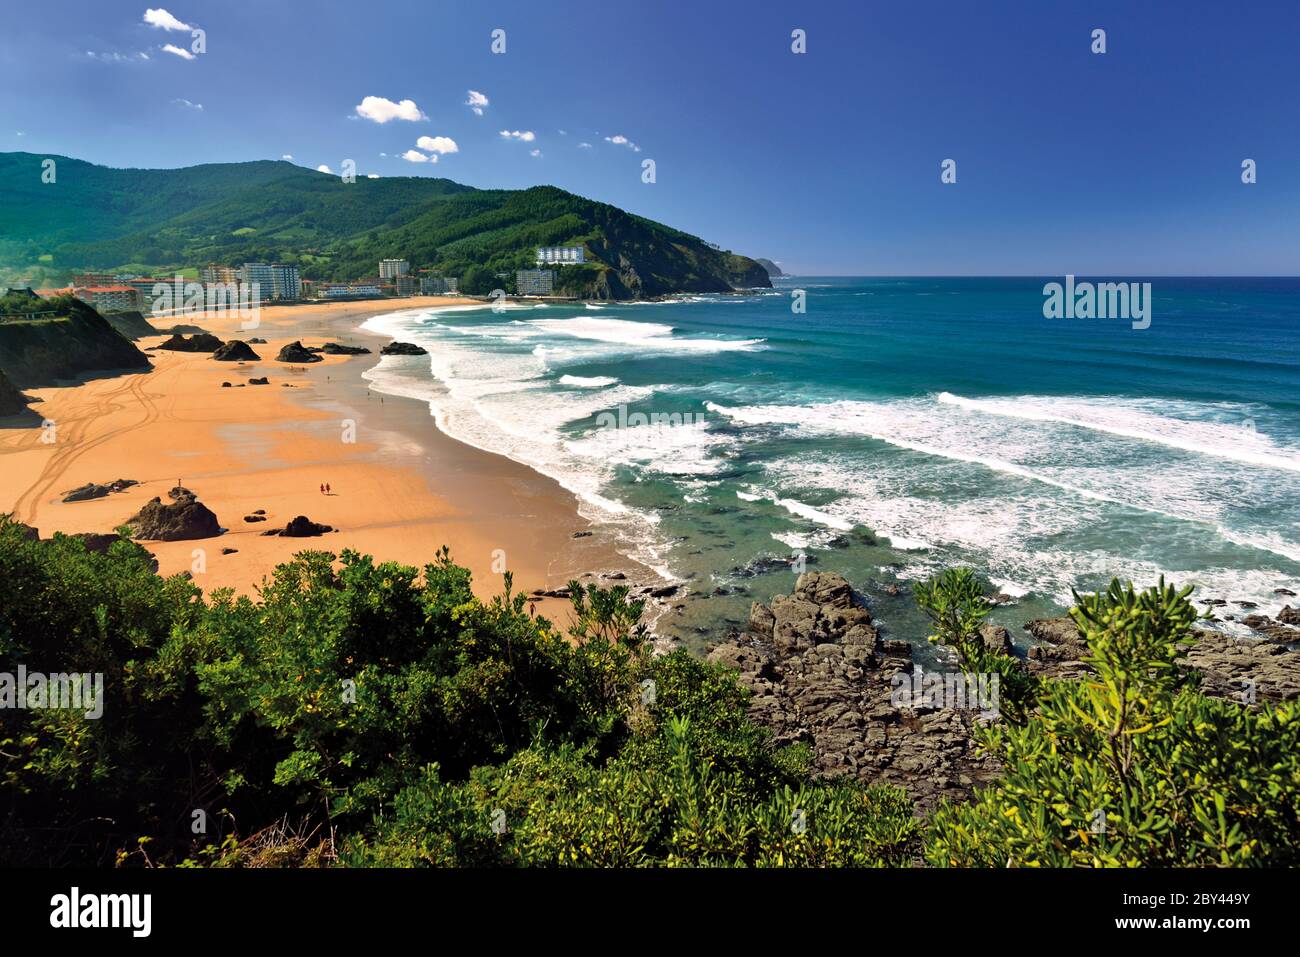 Vista sulla bellissima spiaggia con grandi aree sabbiose, rocce e verdi colline sullo sfondo. Foto Stock